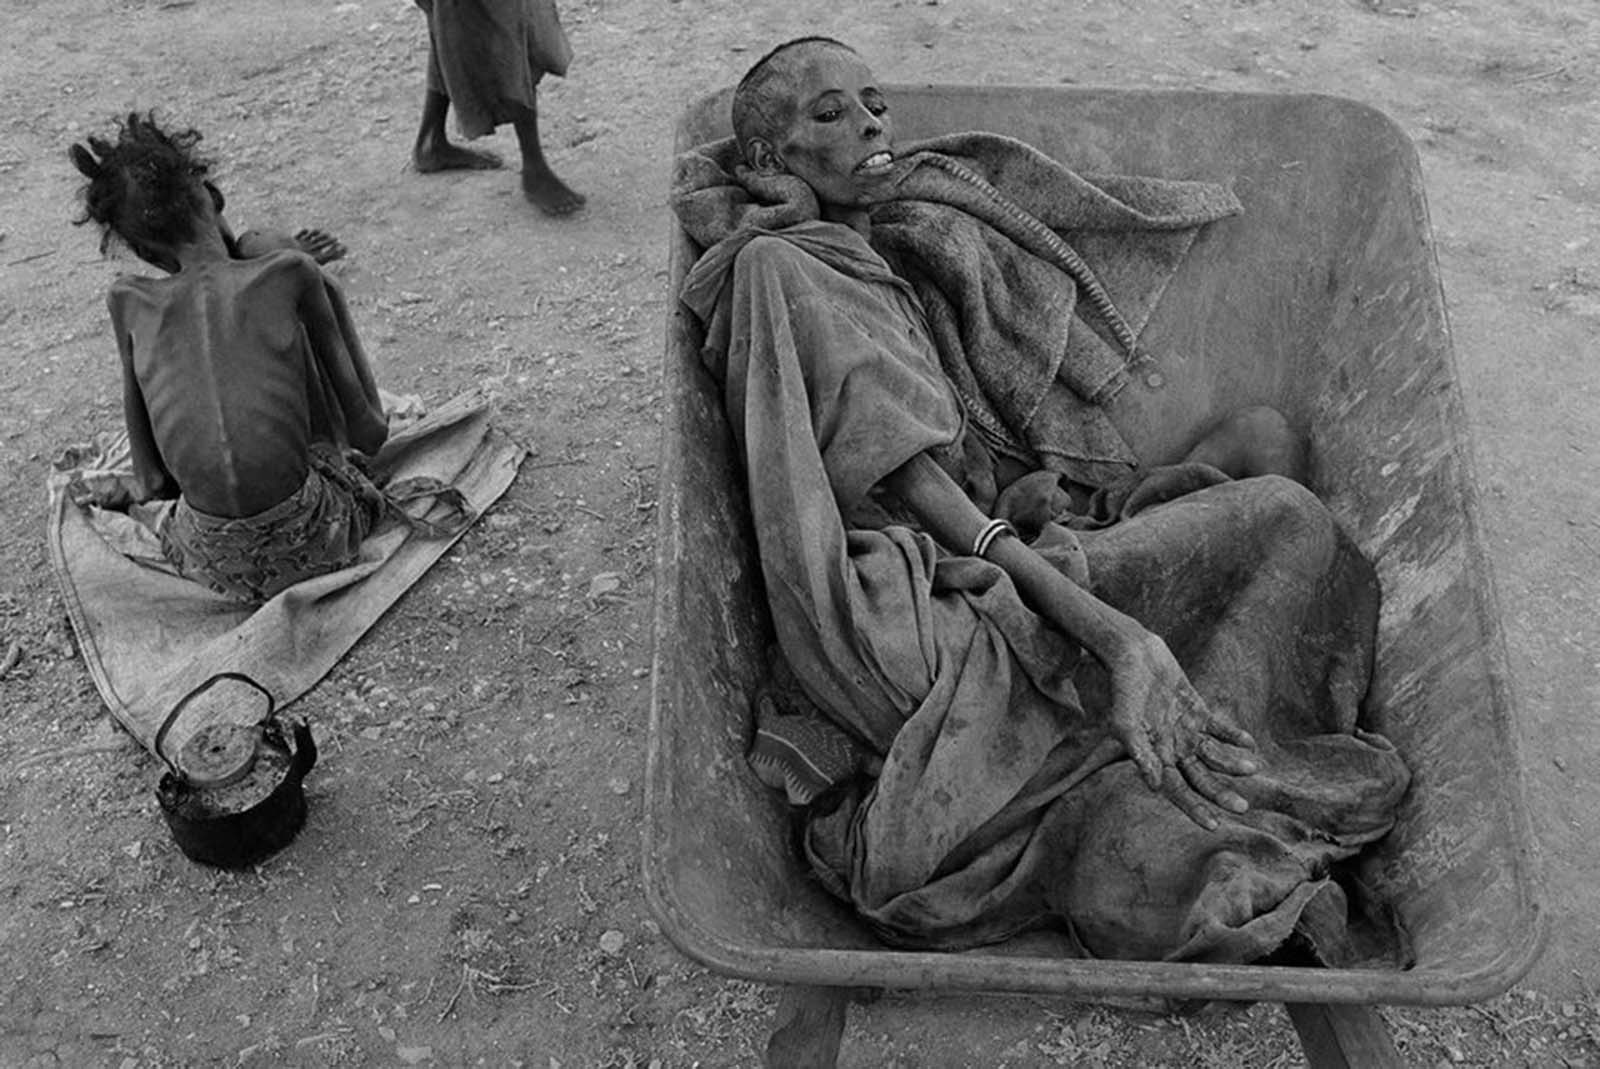 Famine in Somalia, 1992